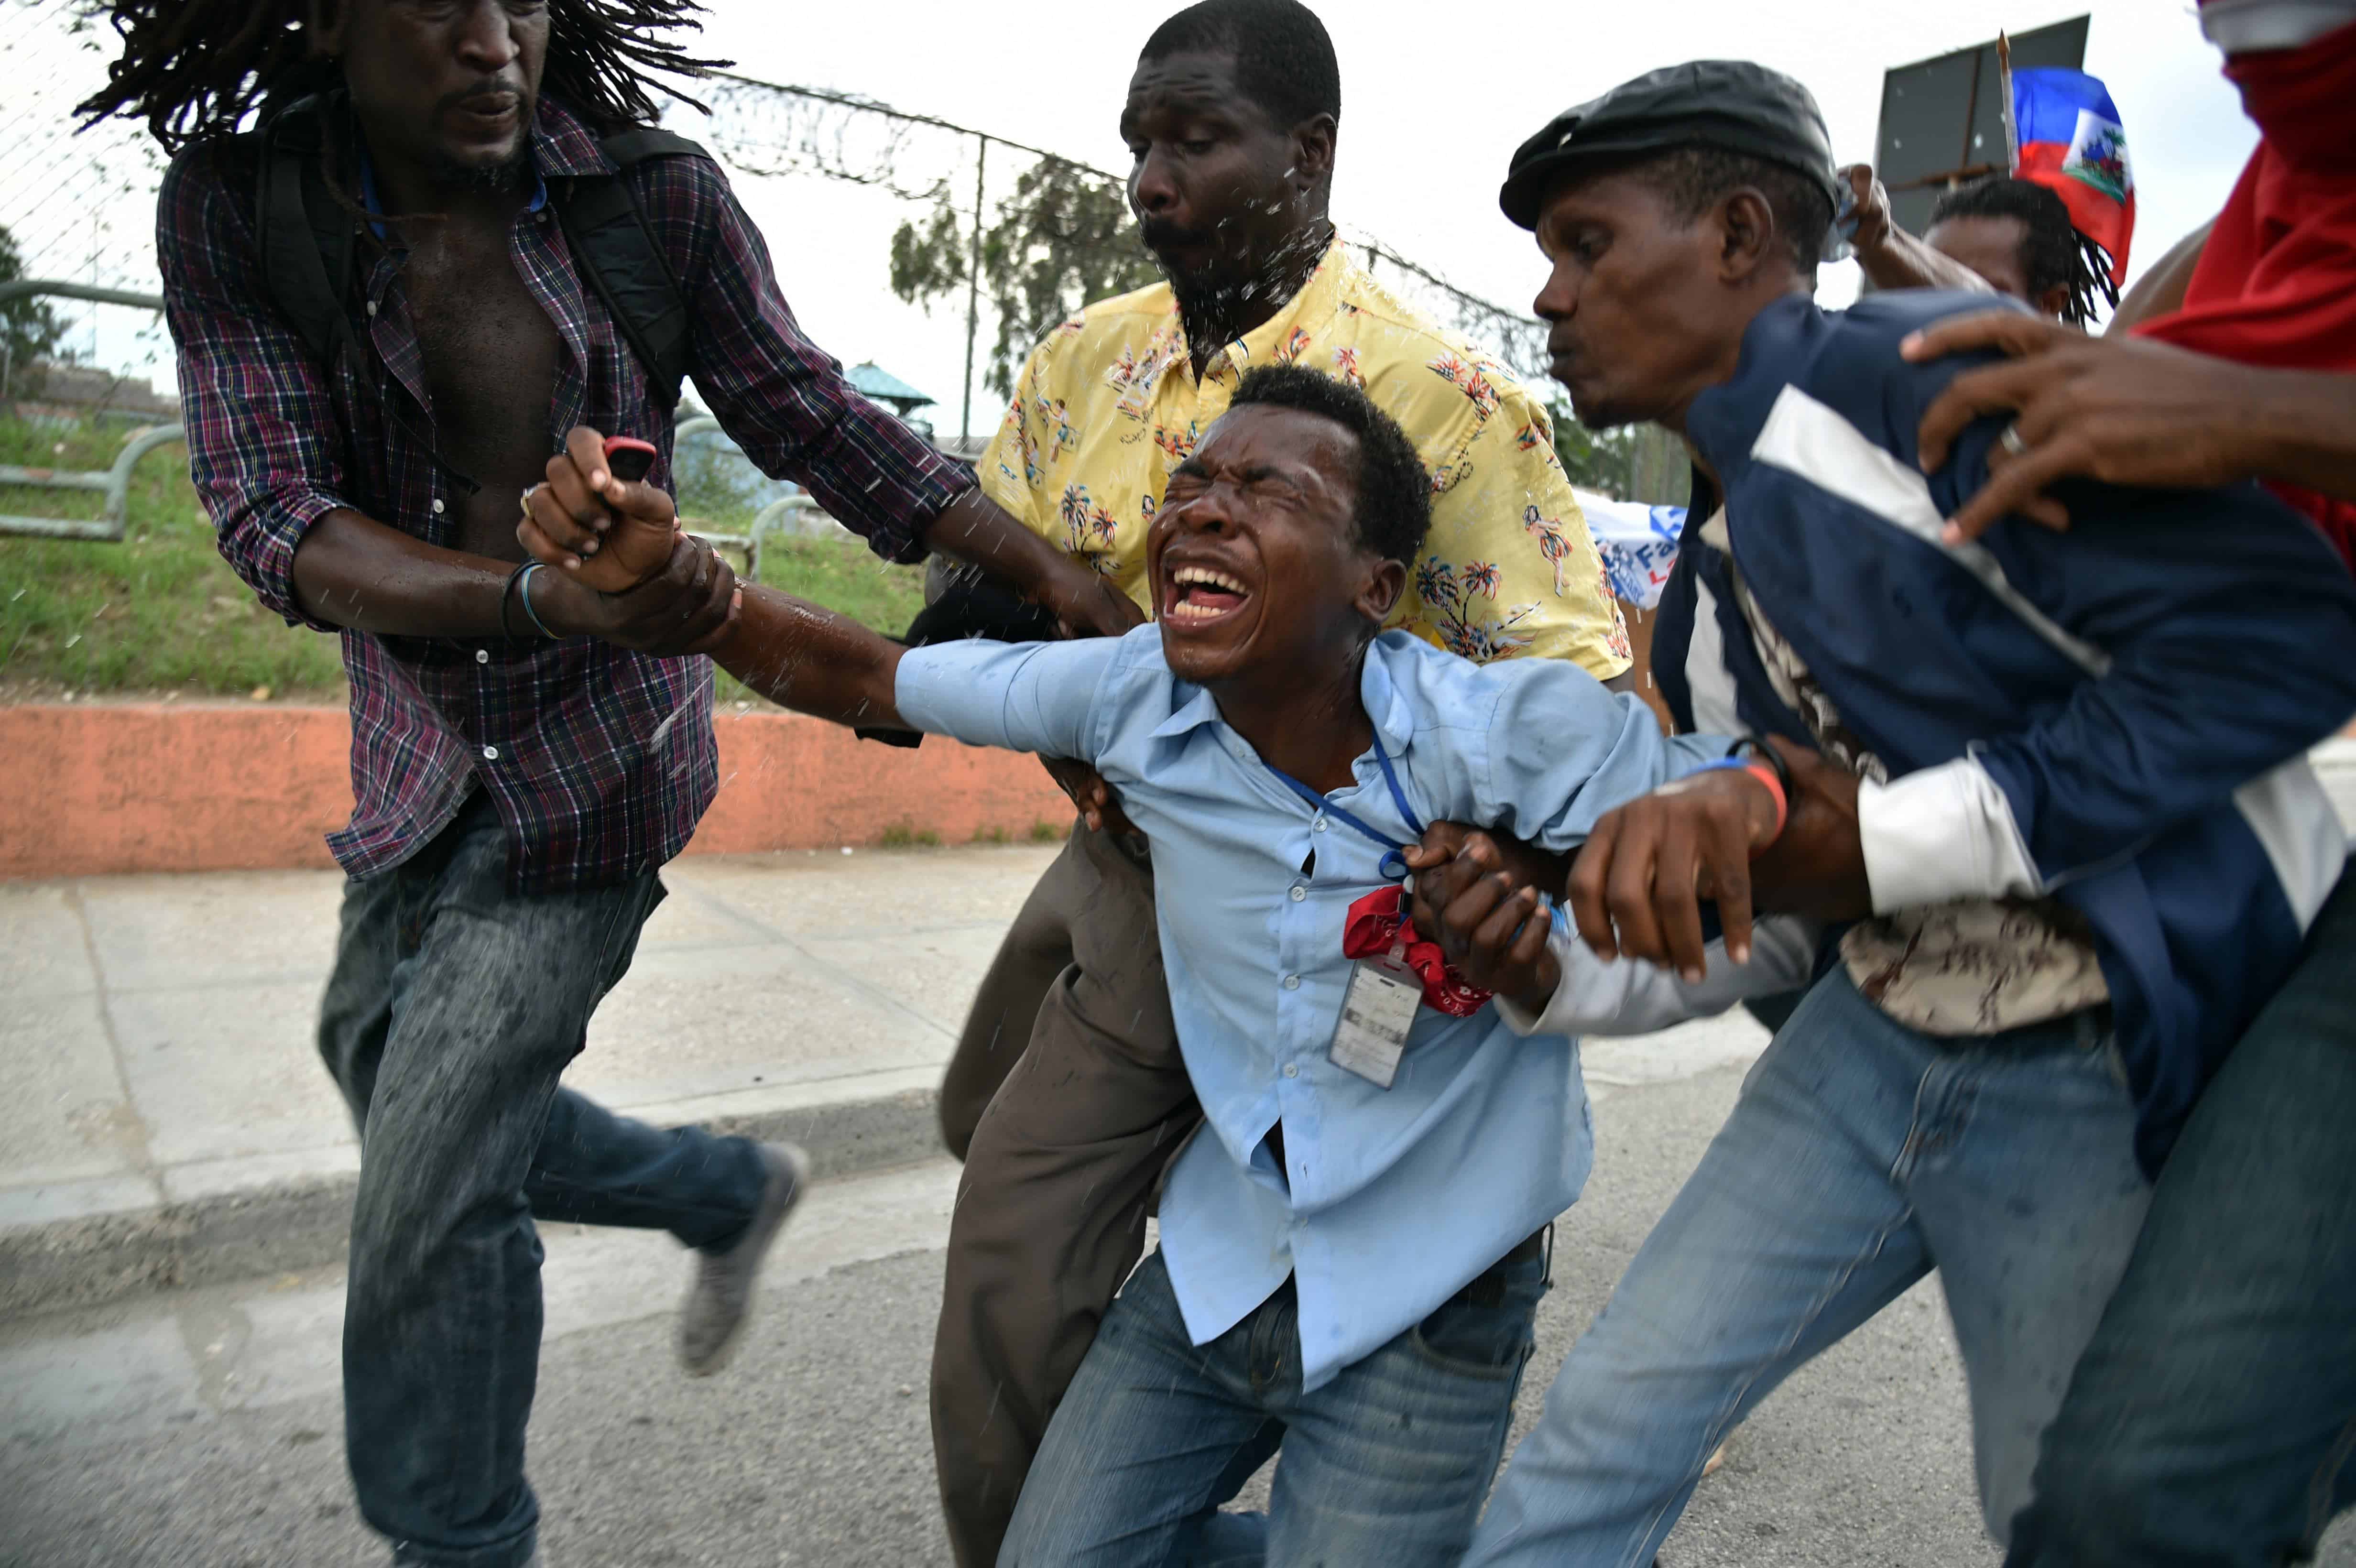 Haiti elections tear gas